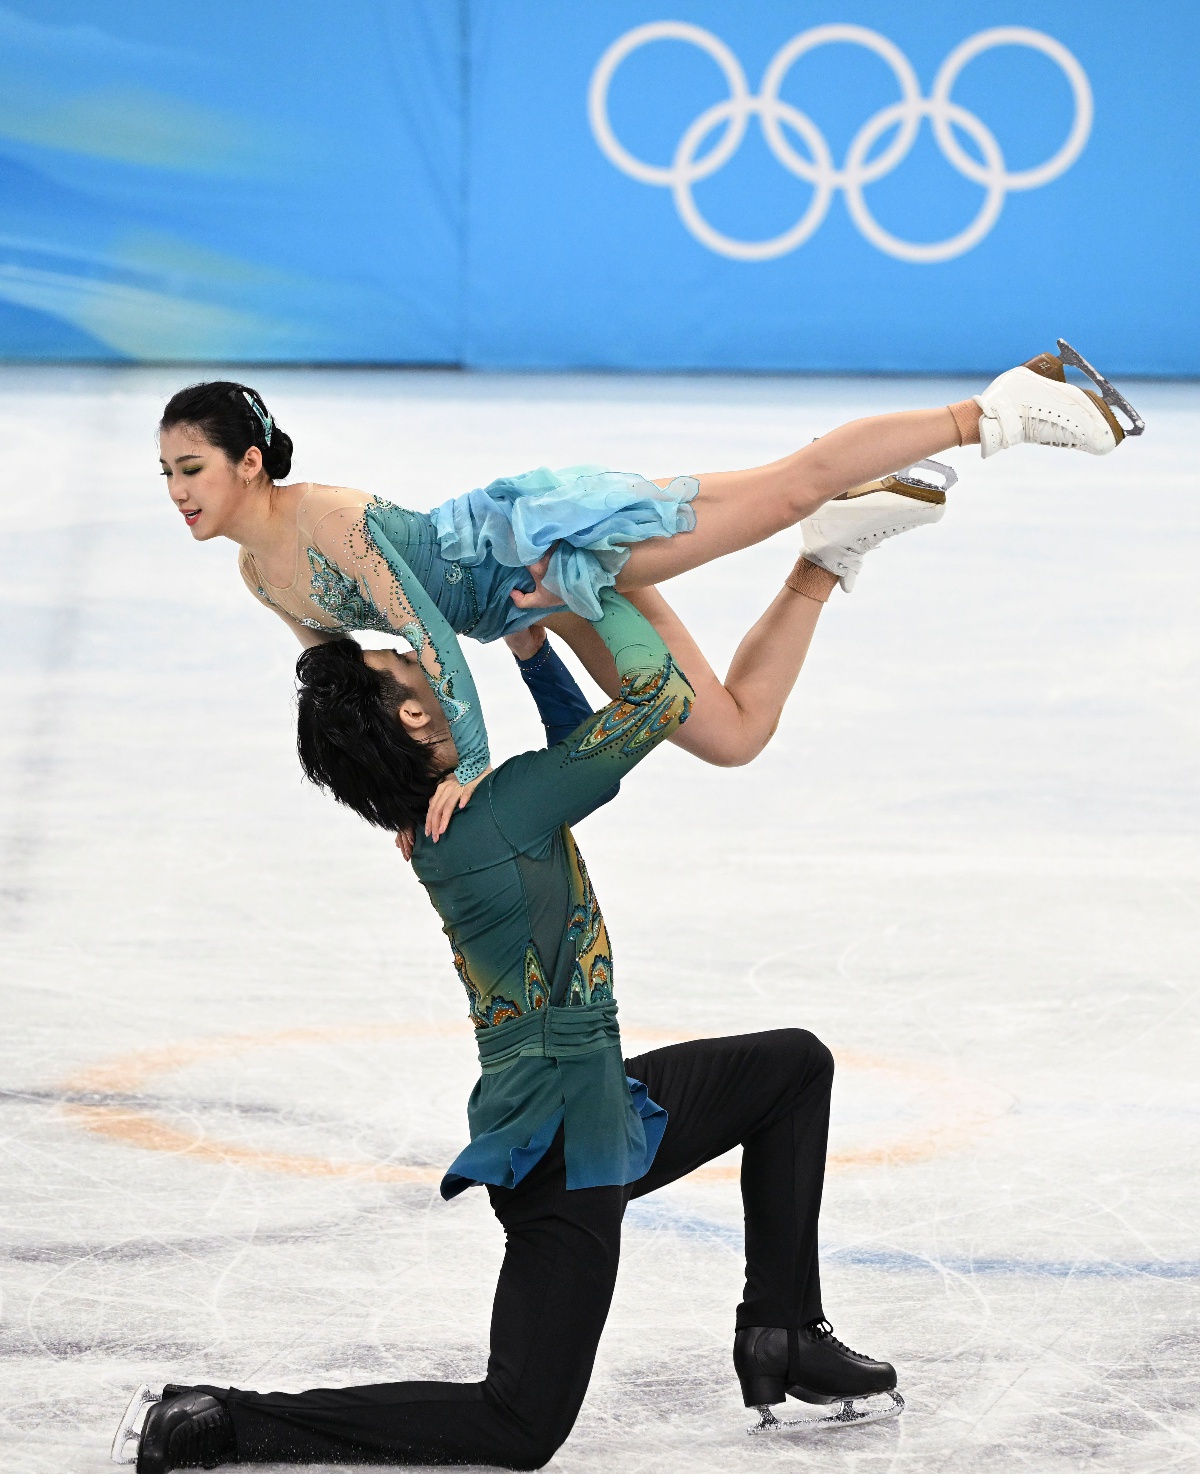 (北京冬奥会)花样滑冰——冰上舞蹈自由舞比赛赛况(6)